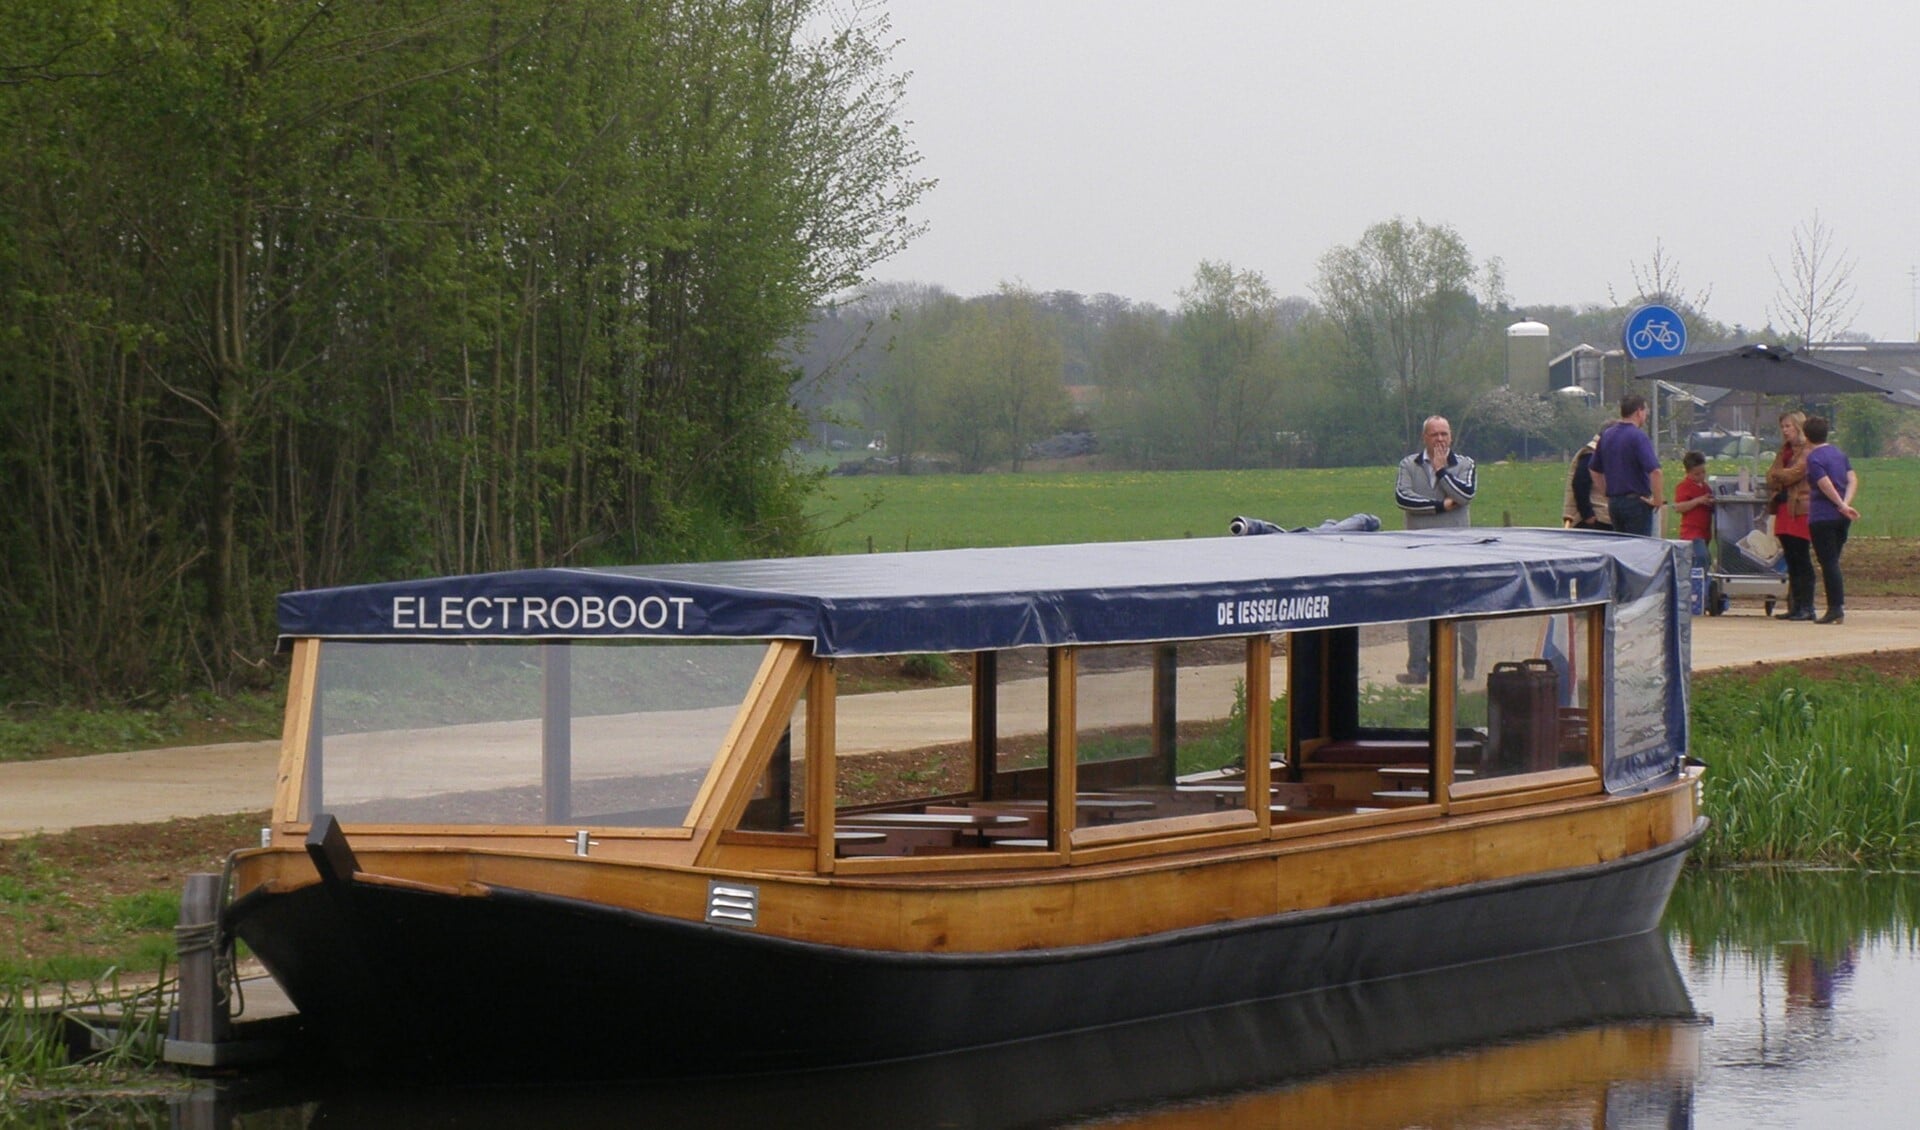 De fluisterboot de Iesselganger, klaar voor vertrek. Foto: PR